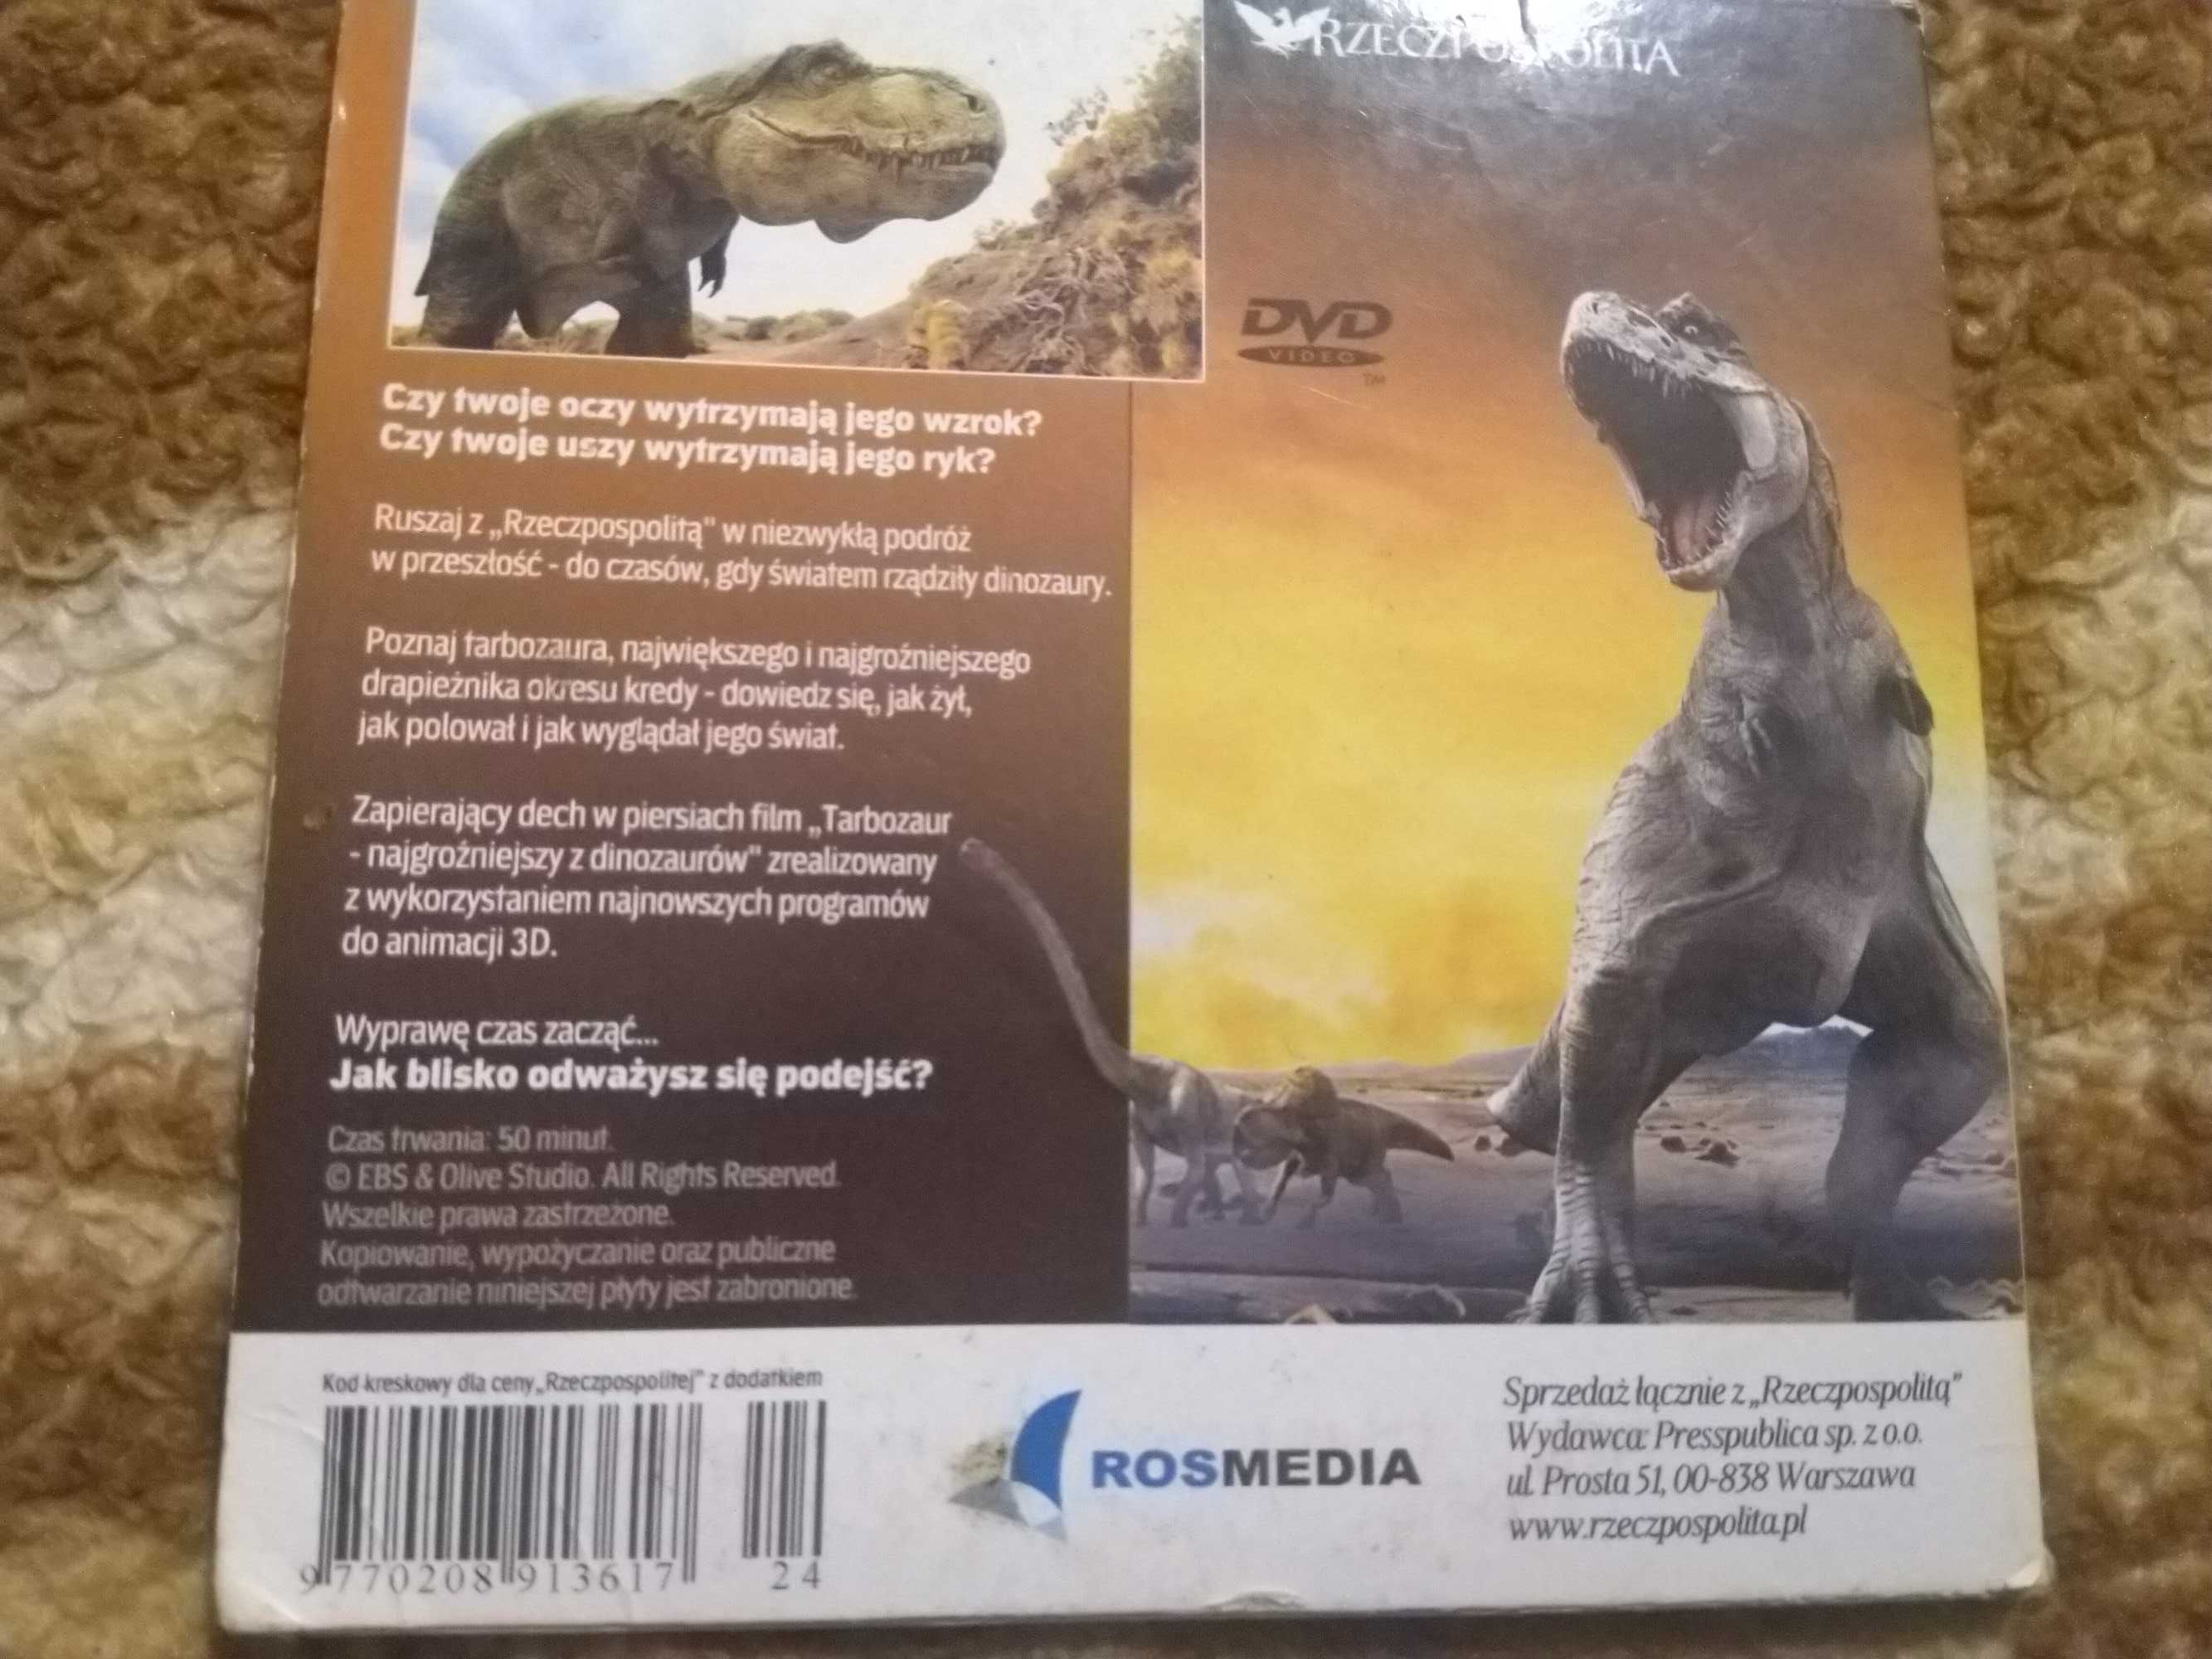 Tarbozaur -  najgroźniejszy z dinozaurów cześć 2